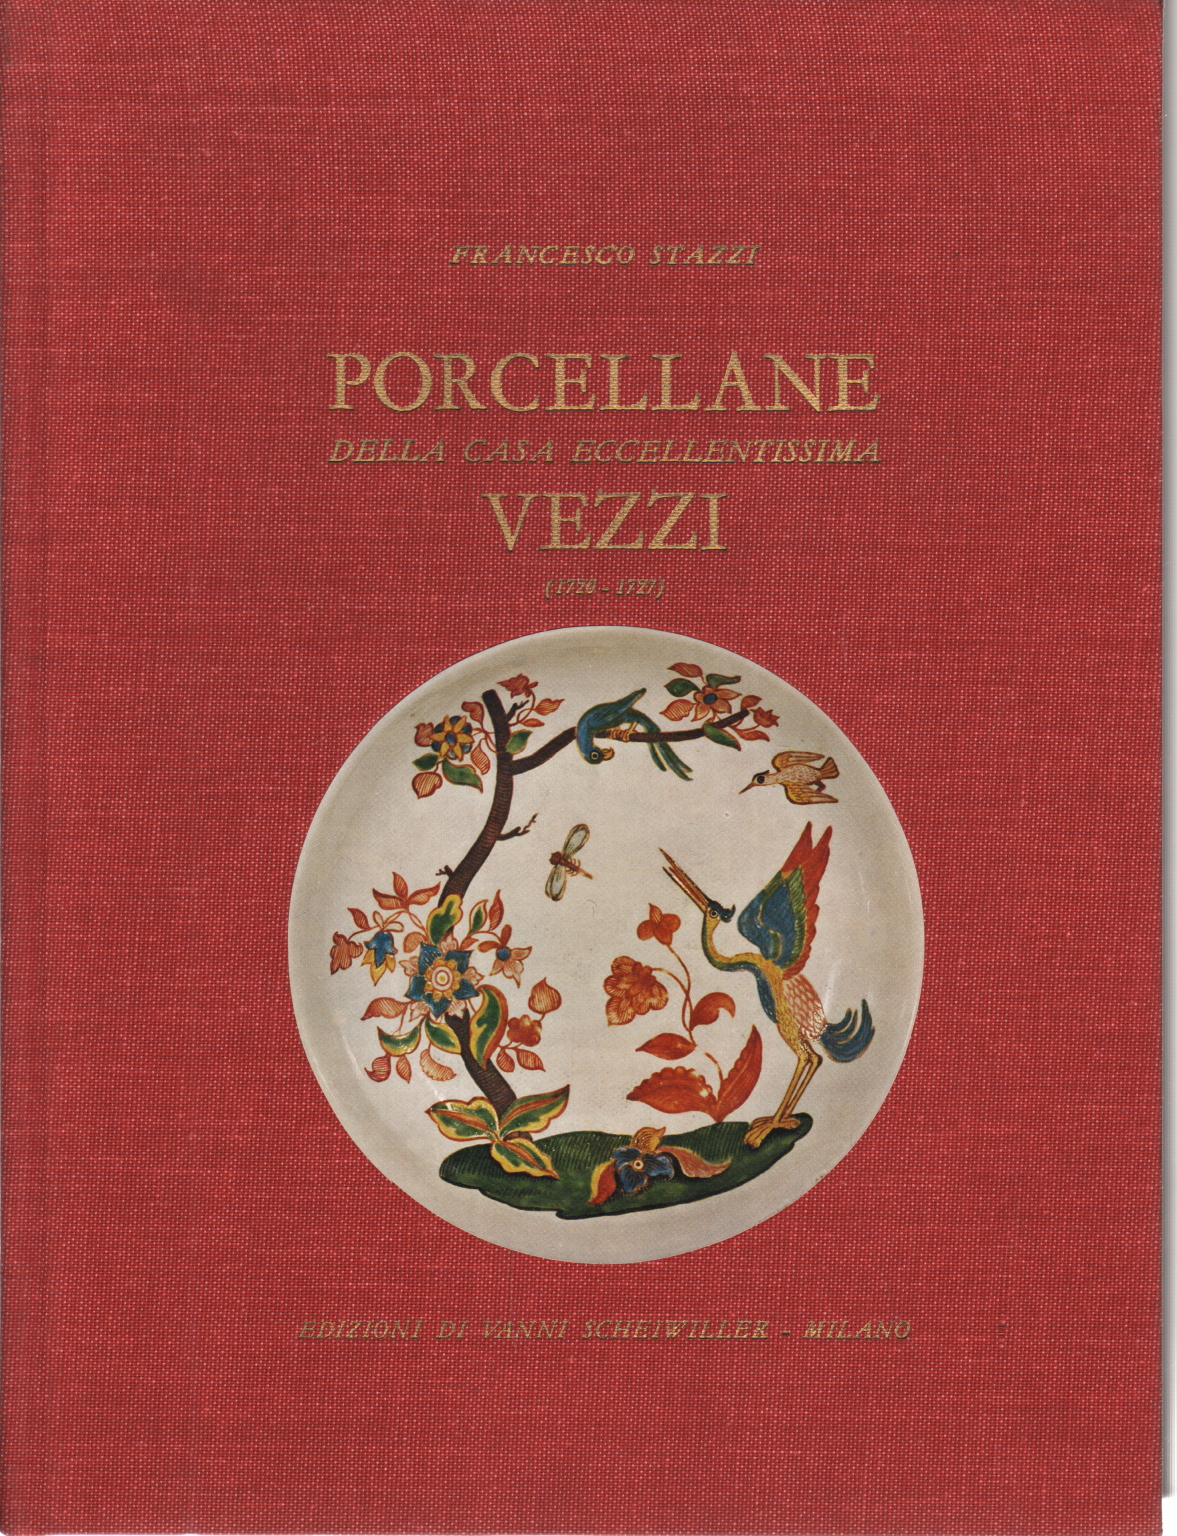 En porcelaine de la maison de sa nourriture Caprices (1720-, Francesco Stazzi